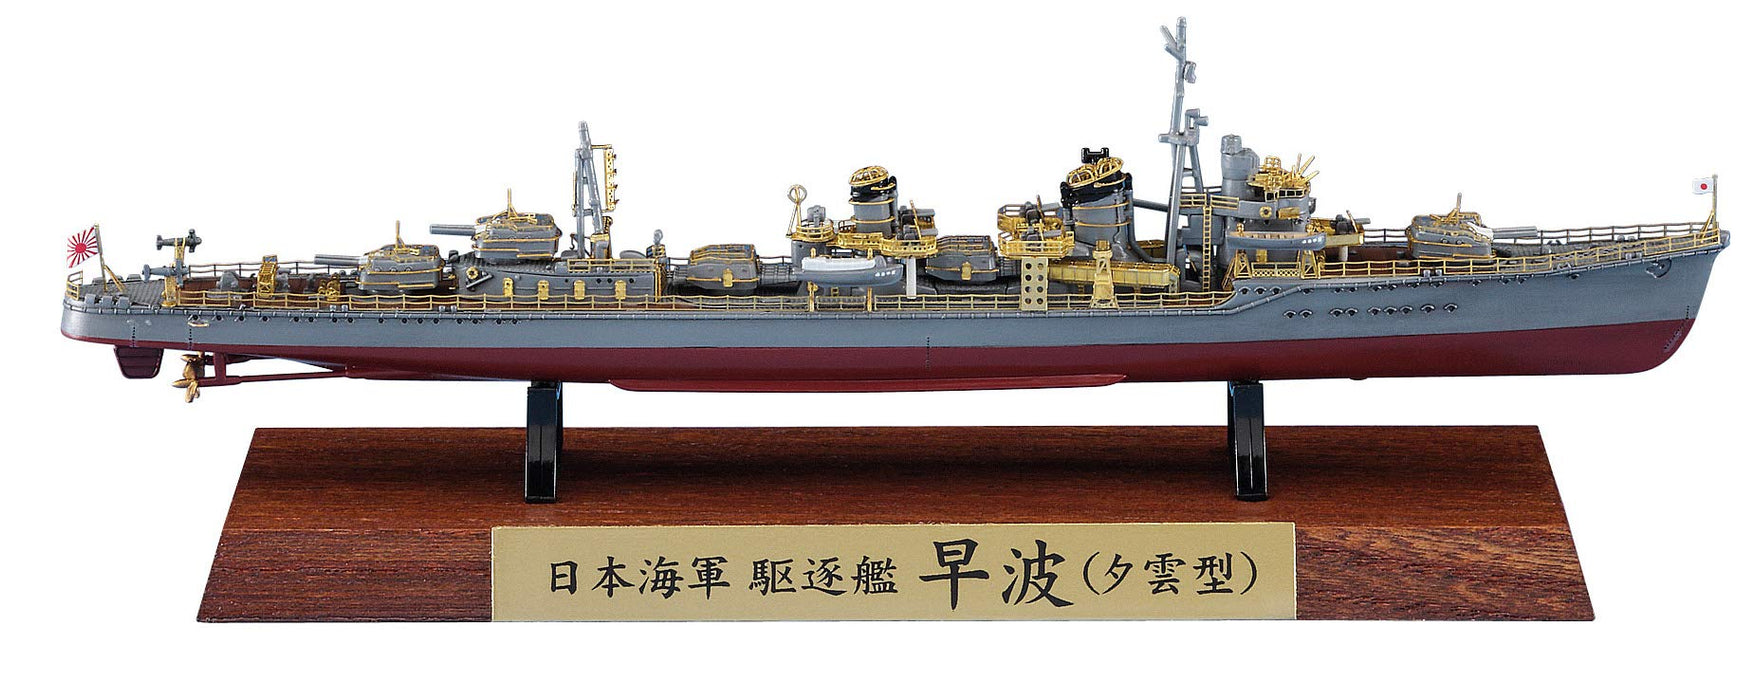 Hasegawa 1/700 japanischer Marine-Zerstörer Hayami (Yugumo-Typ) Vollrumpf-Spezialkunststoffmodell Ch124